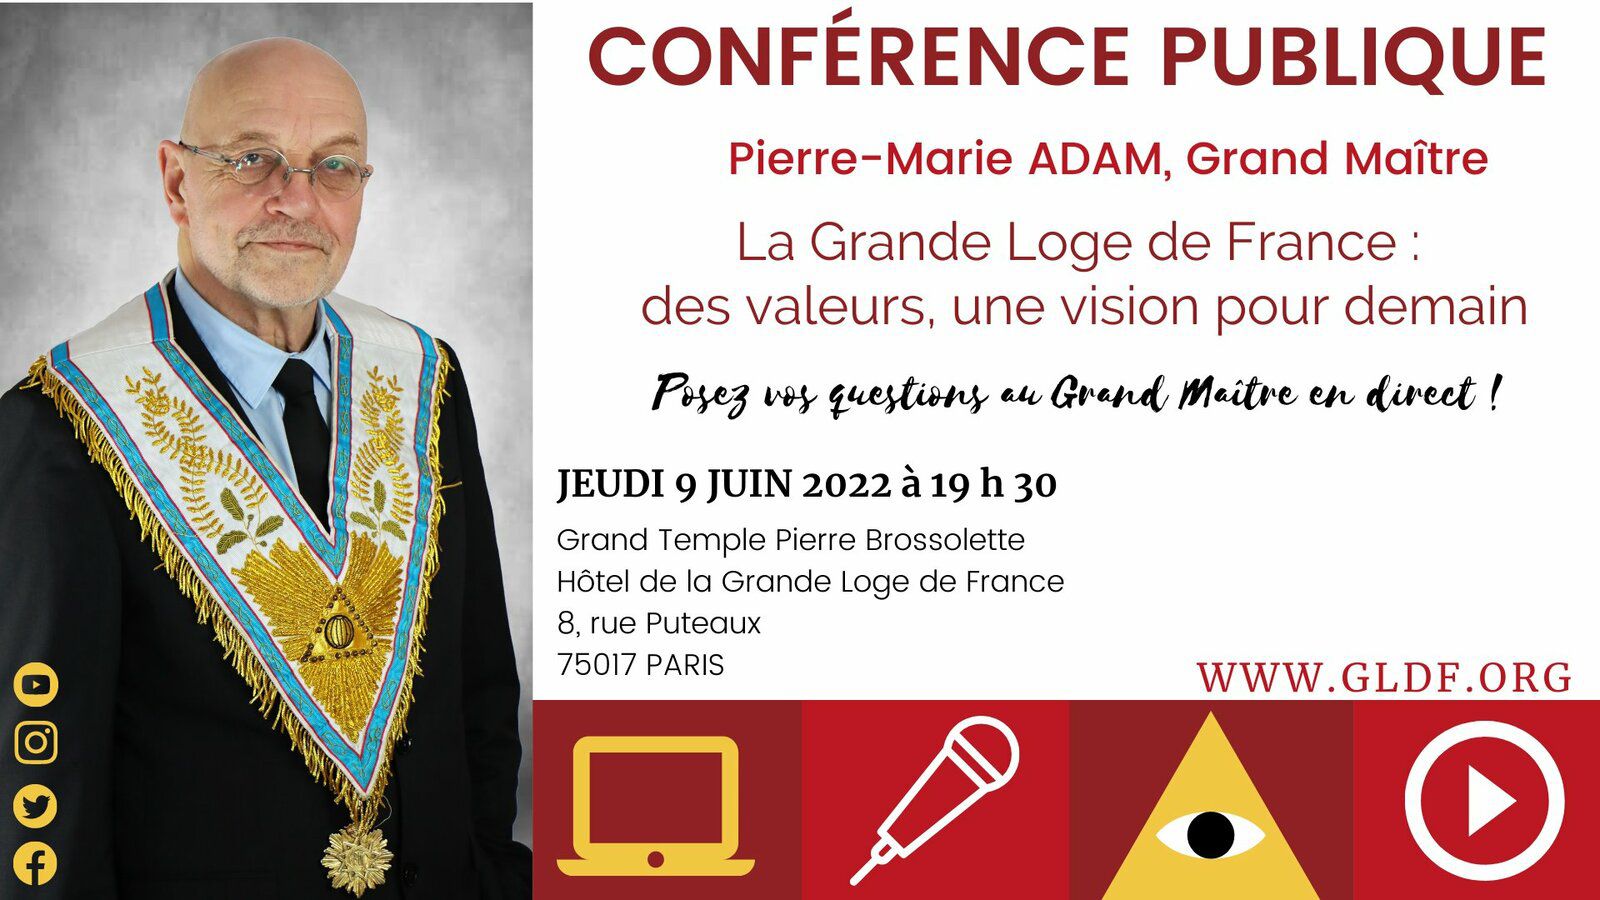 « La Grande Loge de France : des valeurs, une vision pour demain », par Pierre-Marie Adam, Grand Maître, le 9 juin 2022